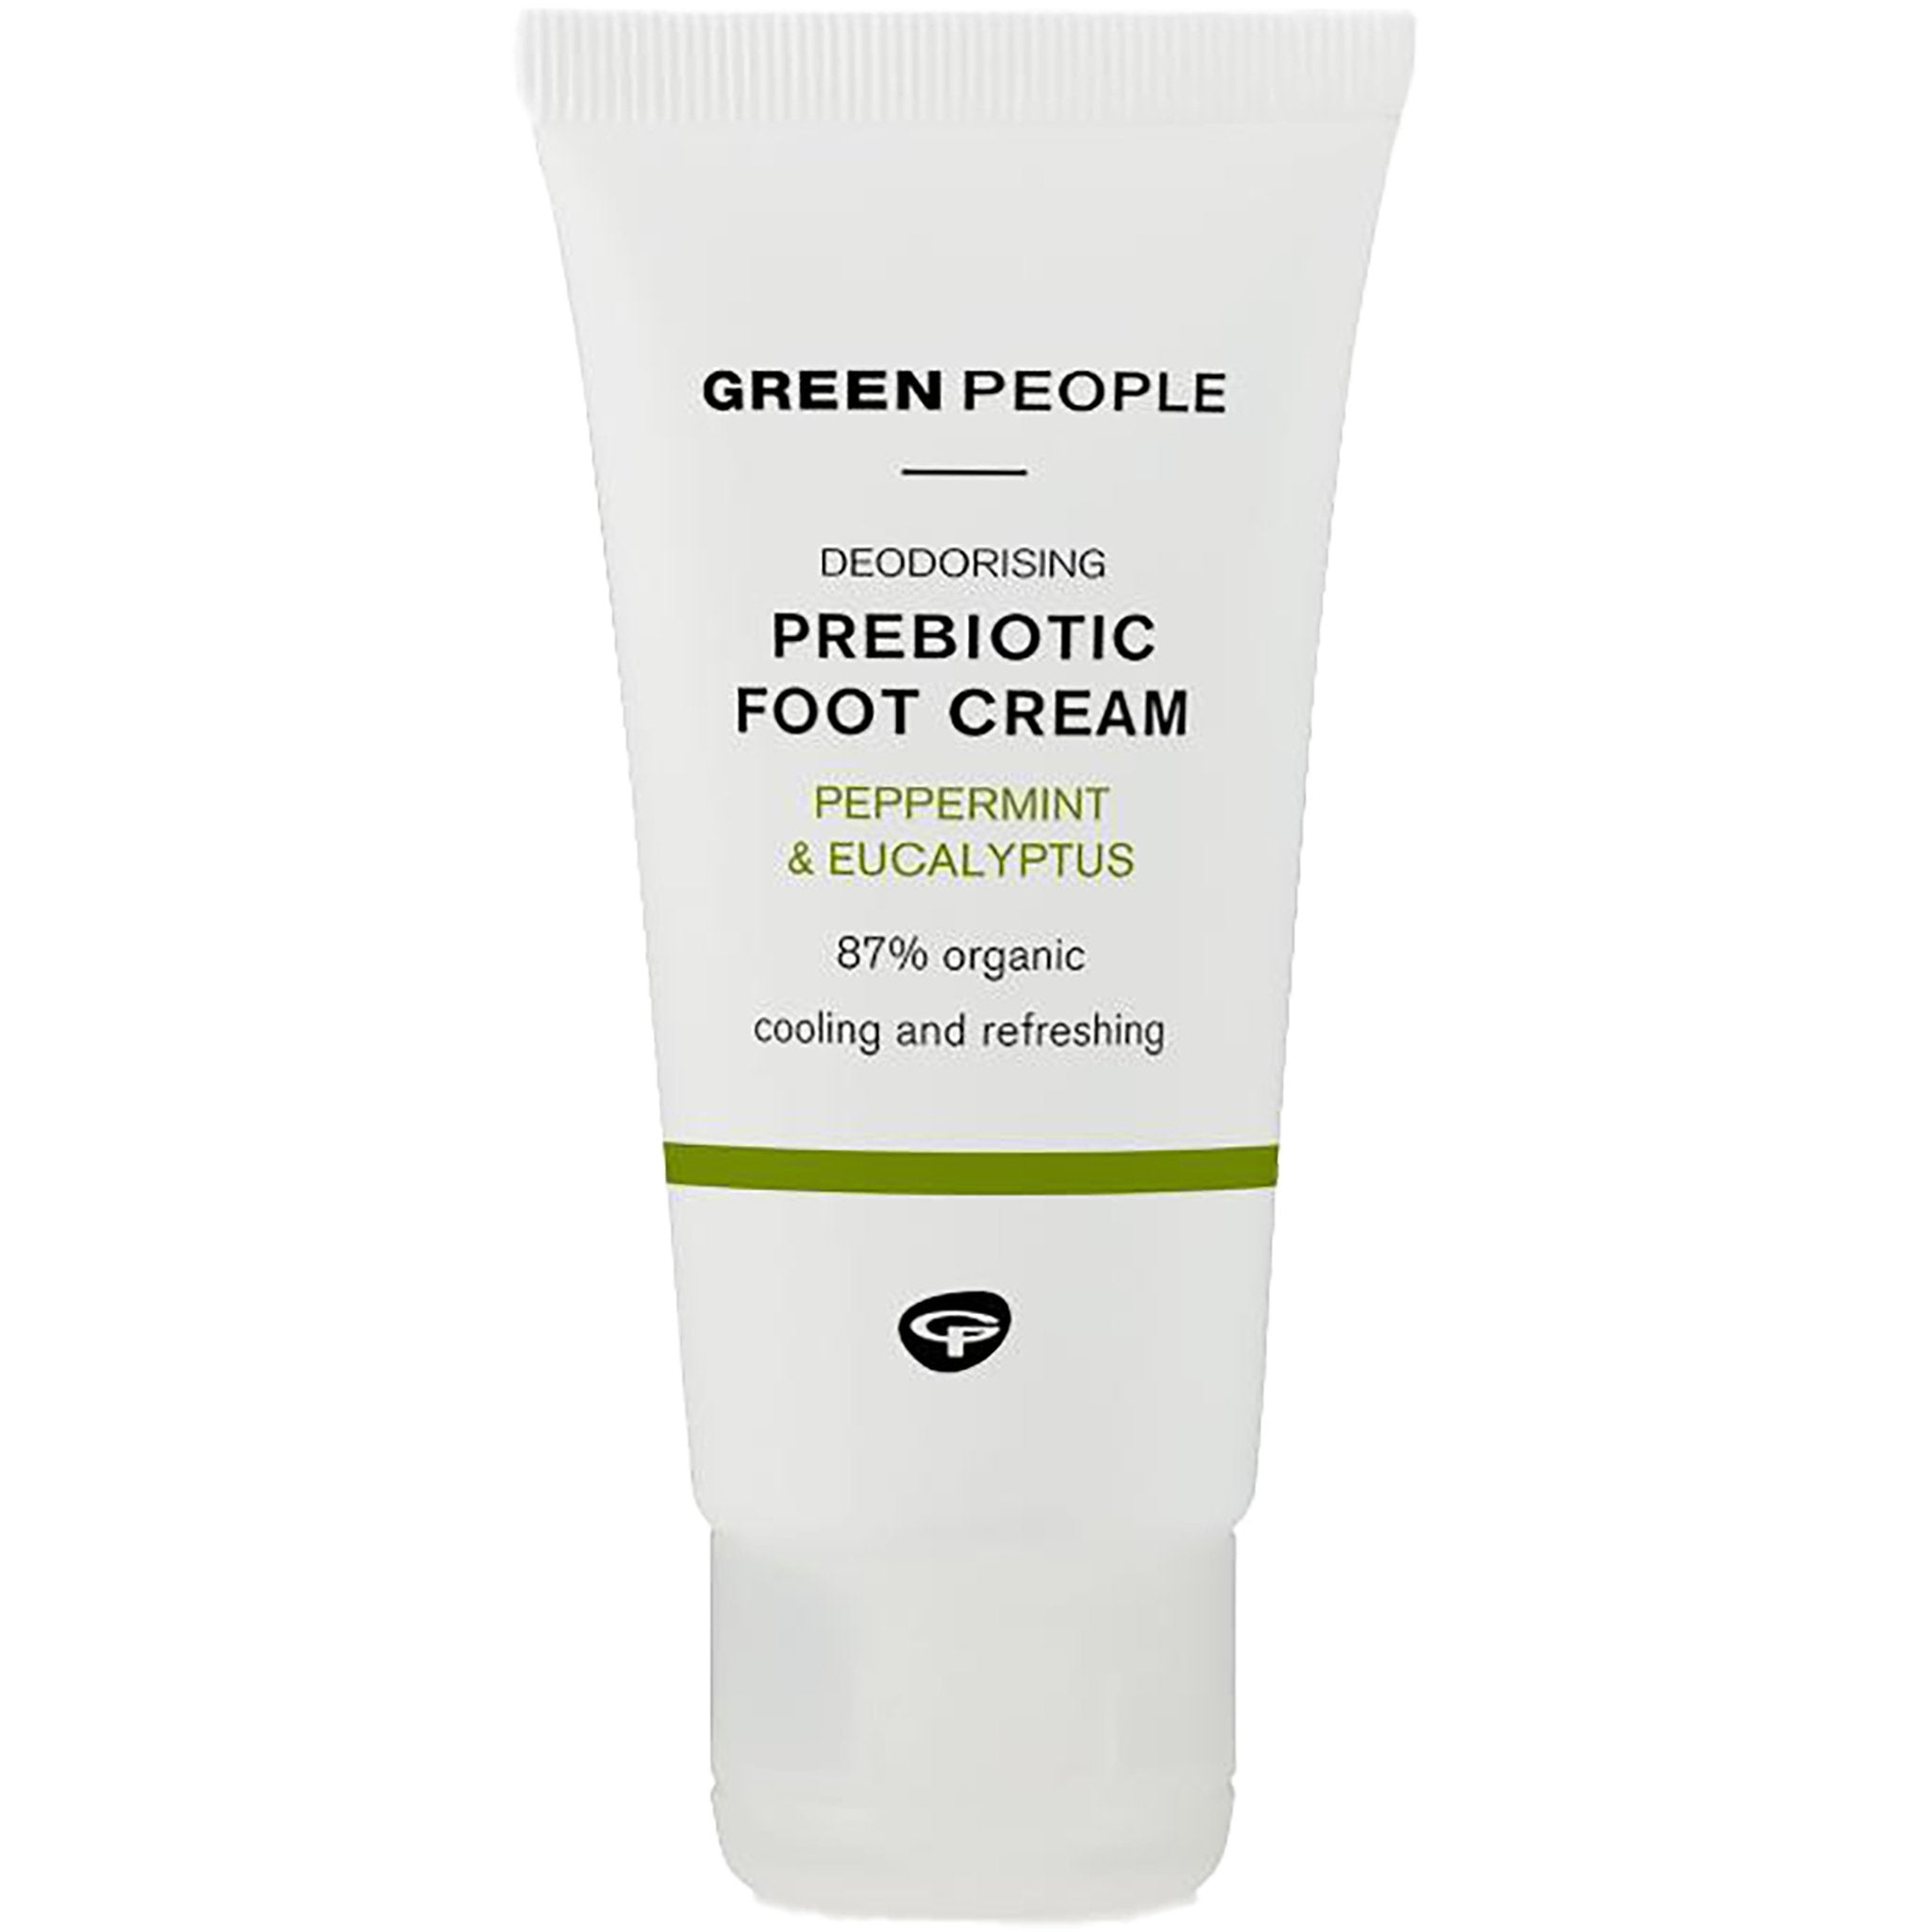 Deodorising Prebiotic Foot Cream - mypure.co.uk